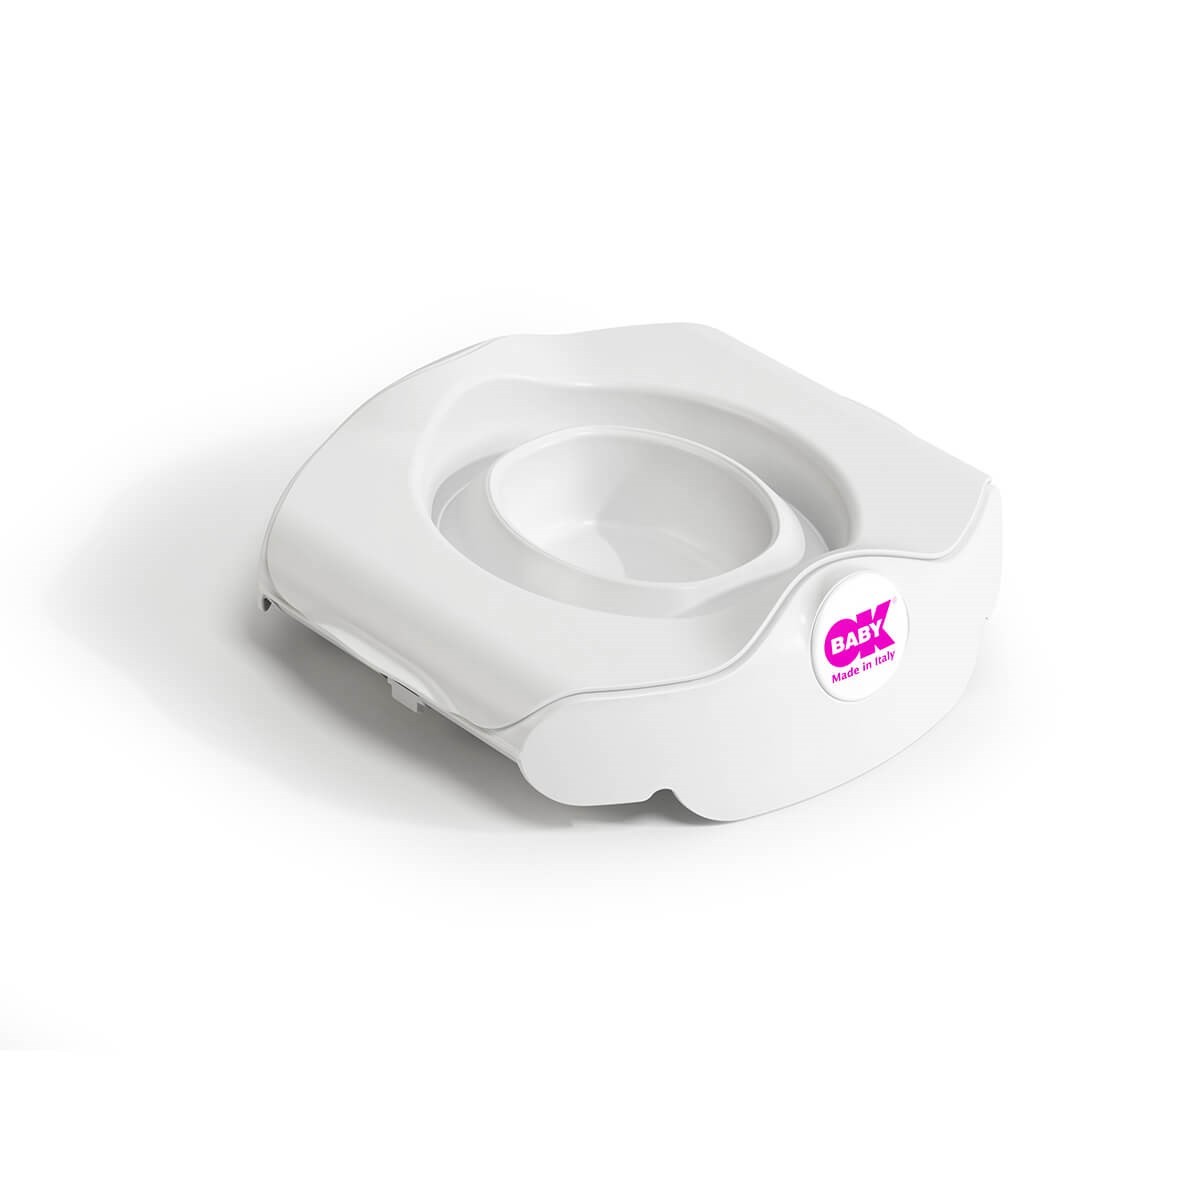 OkBaby Roady Katlanabilir Oturak ve Klozet Adaptörü & Disposable Bez Seti 30’lu / Beyaz